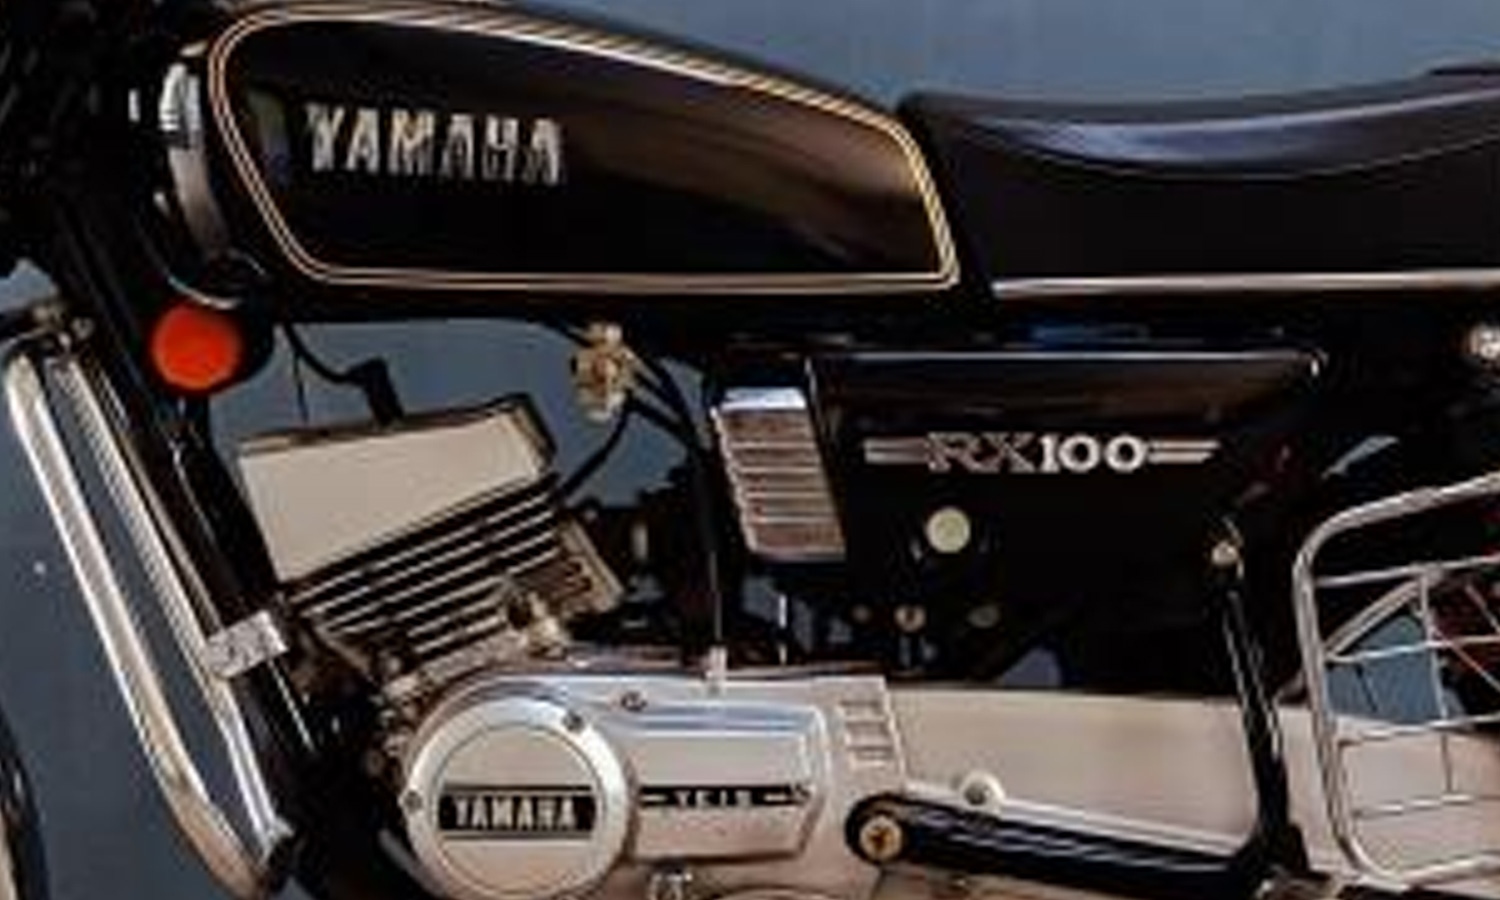 Yamaha-RX100 3